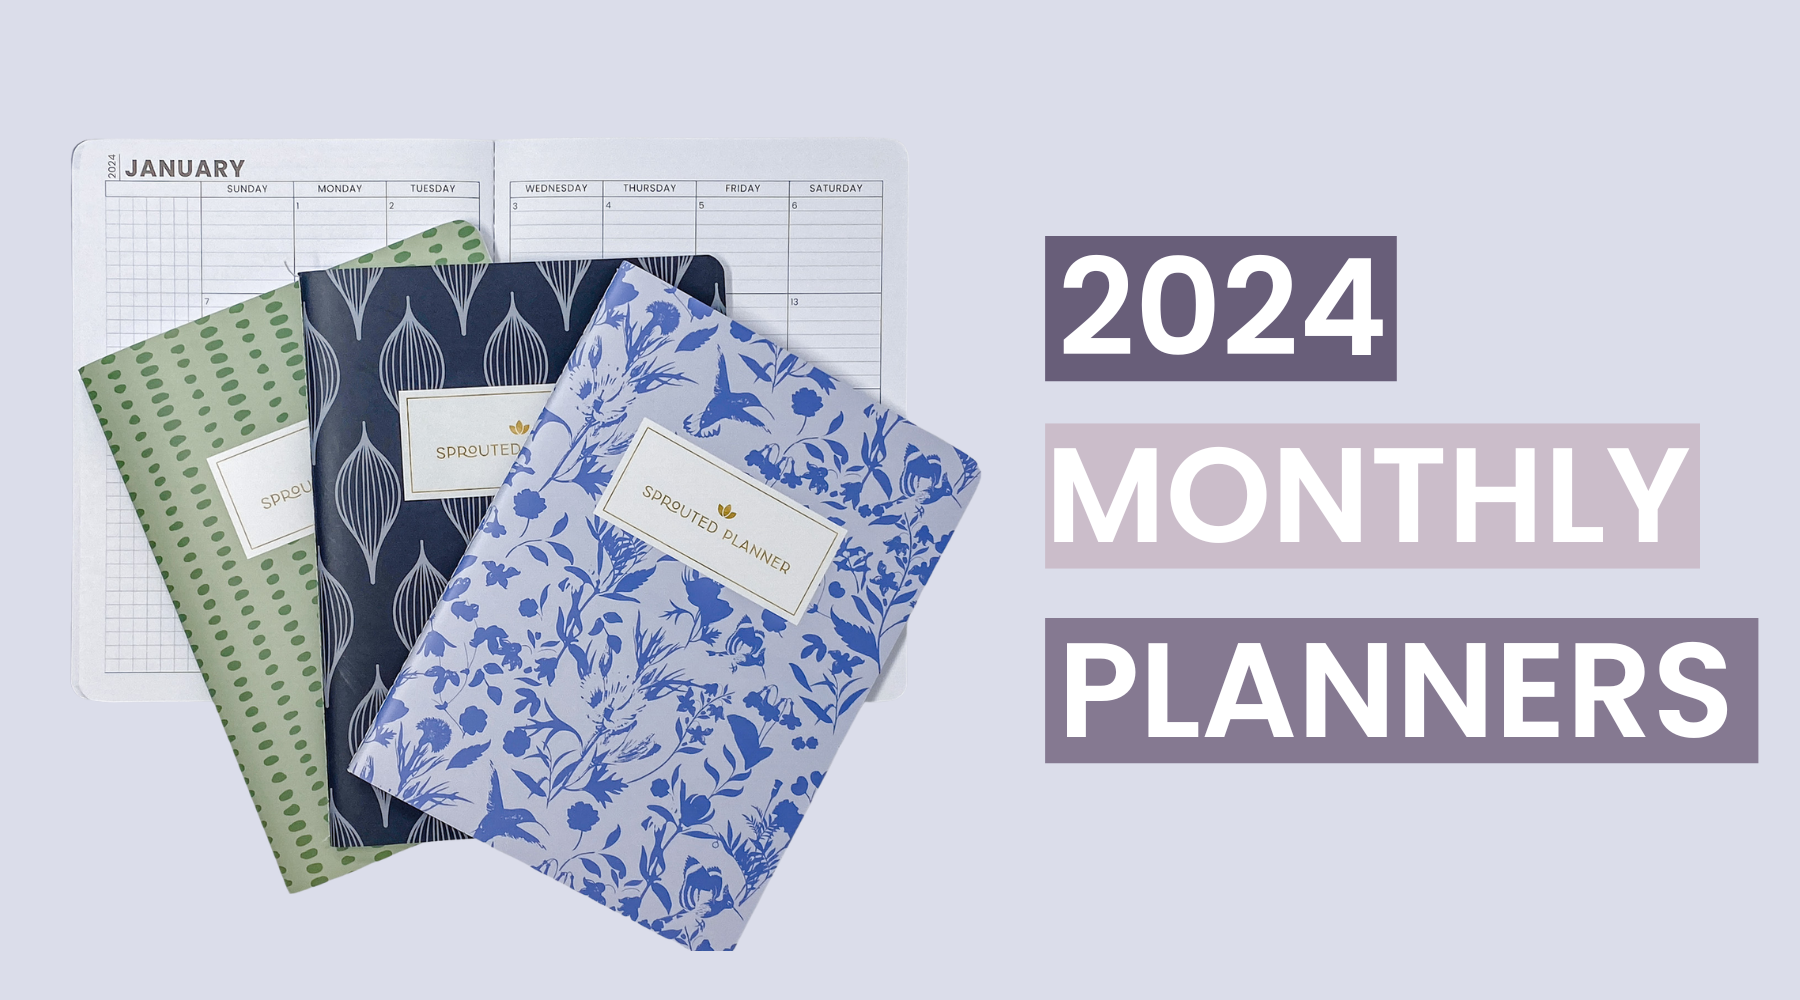 2024 Monthly Planner Rundown